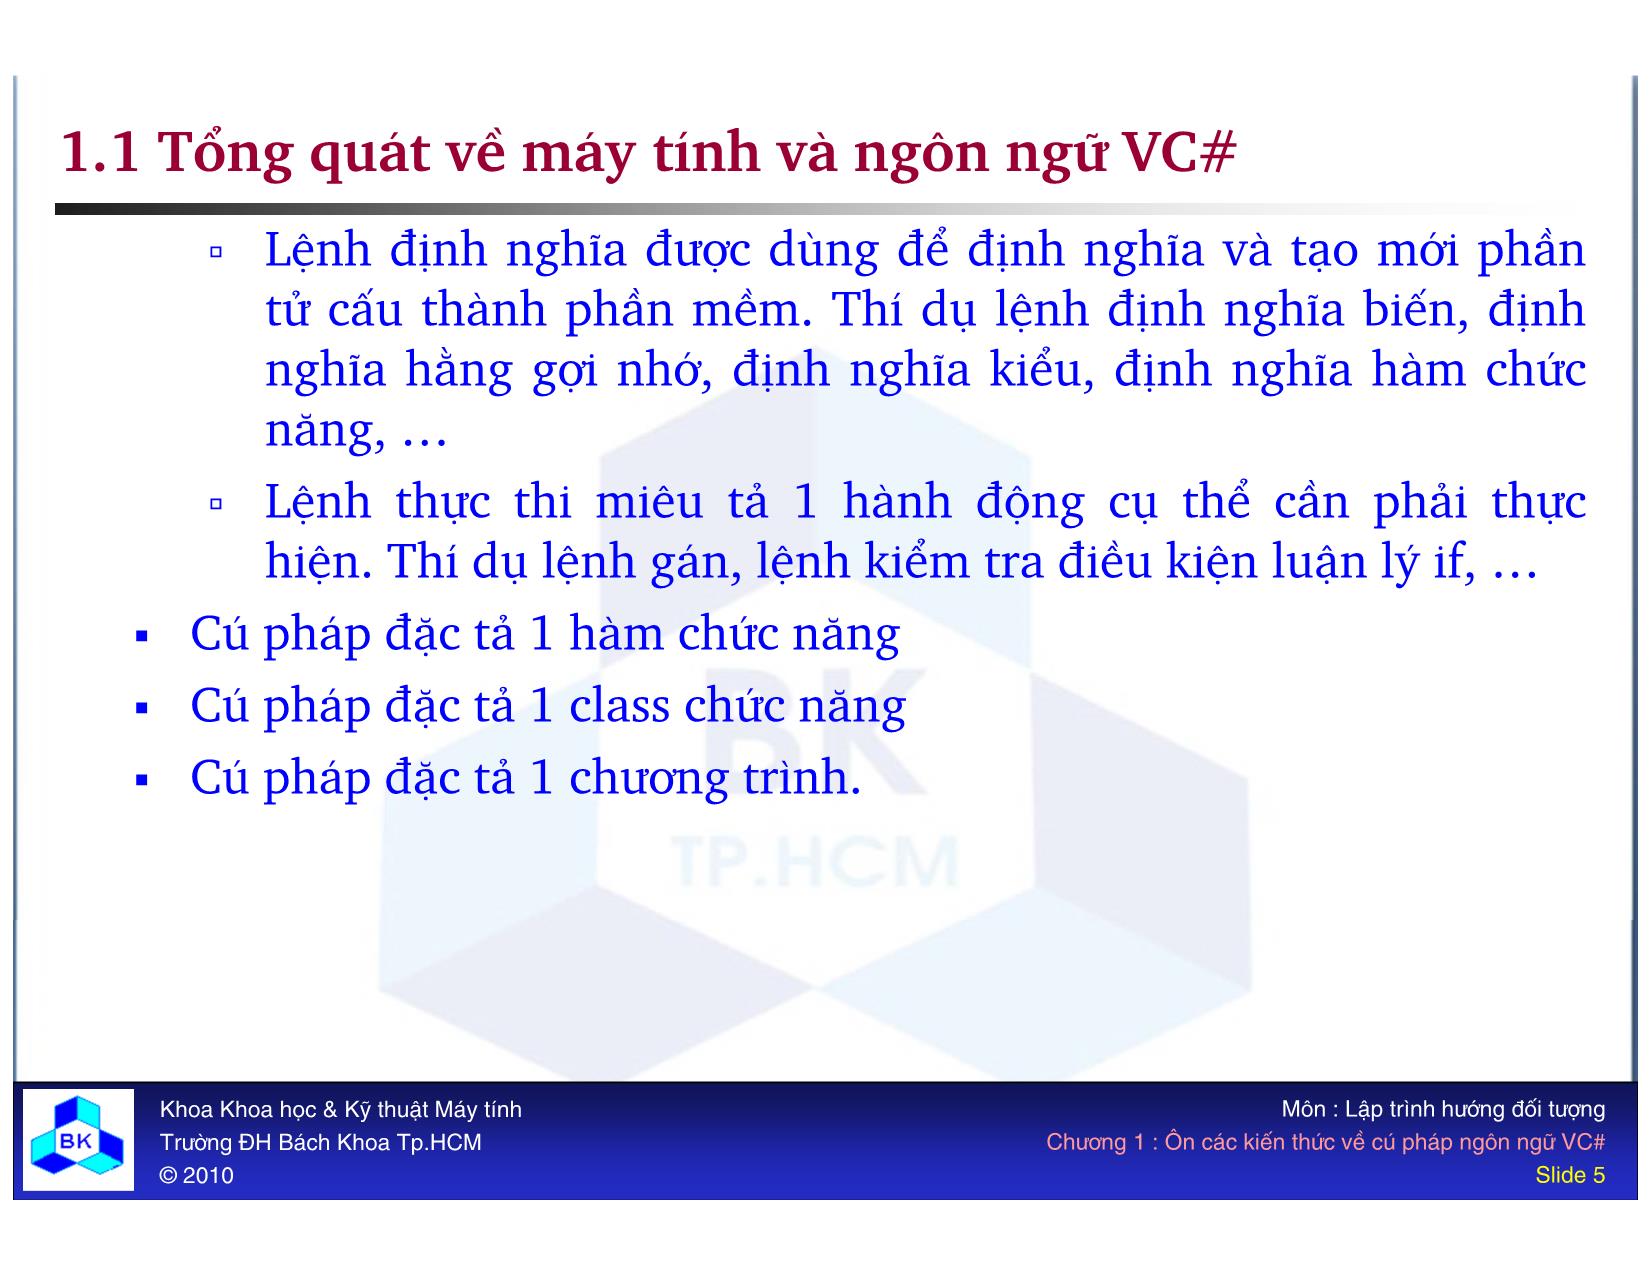 Bài giảng Lập trình hướng đối tượng - Chương 1: Ôn các kiến thức về cú pháp ngôn ngữ VC# trang 5